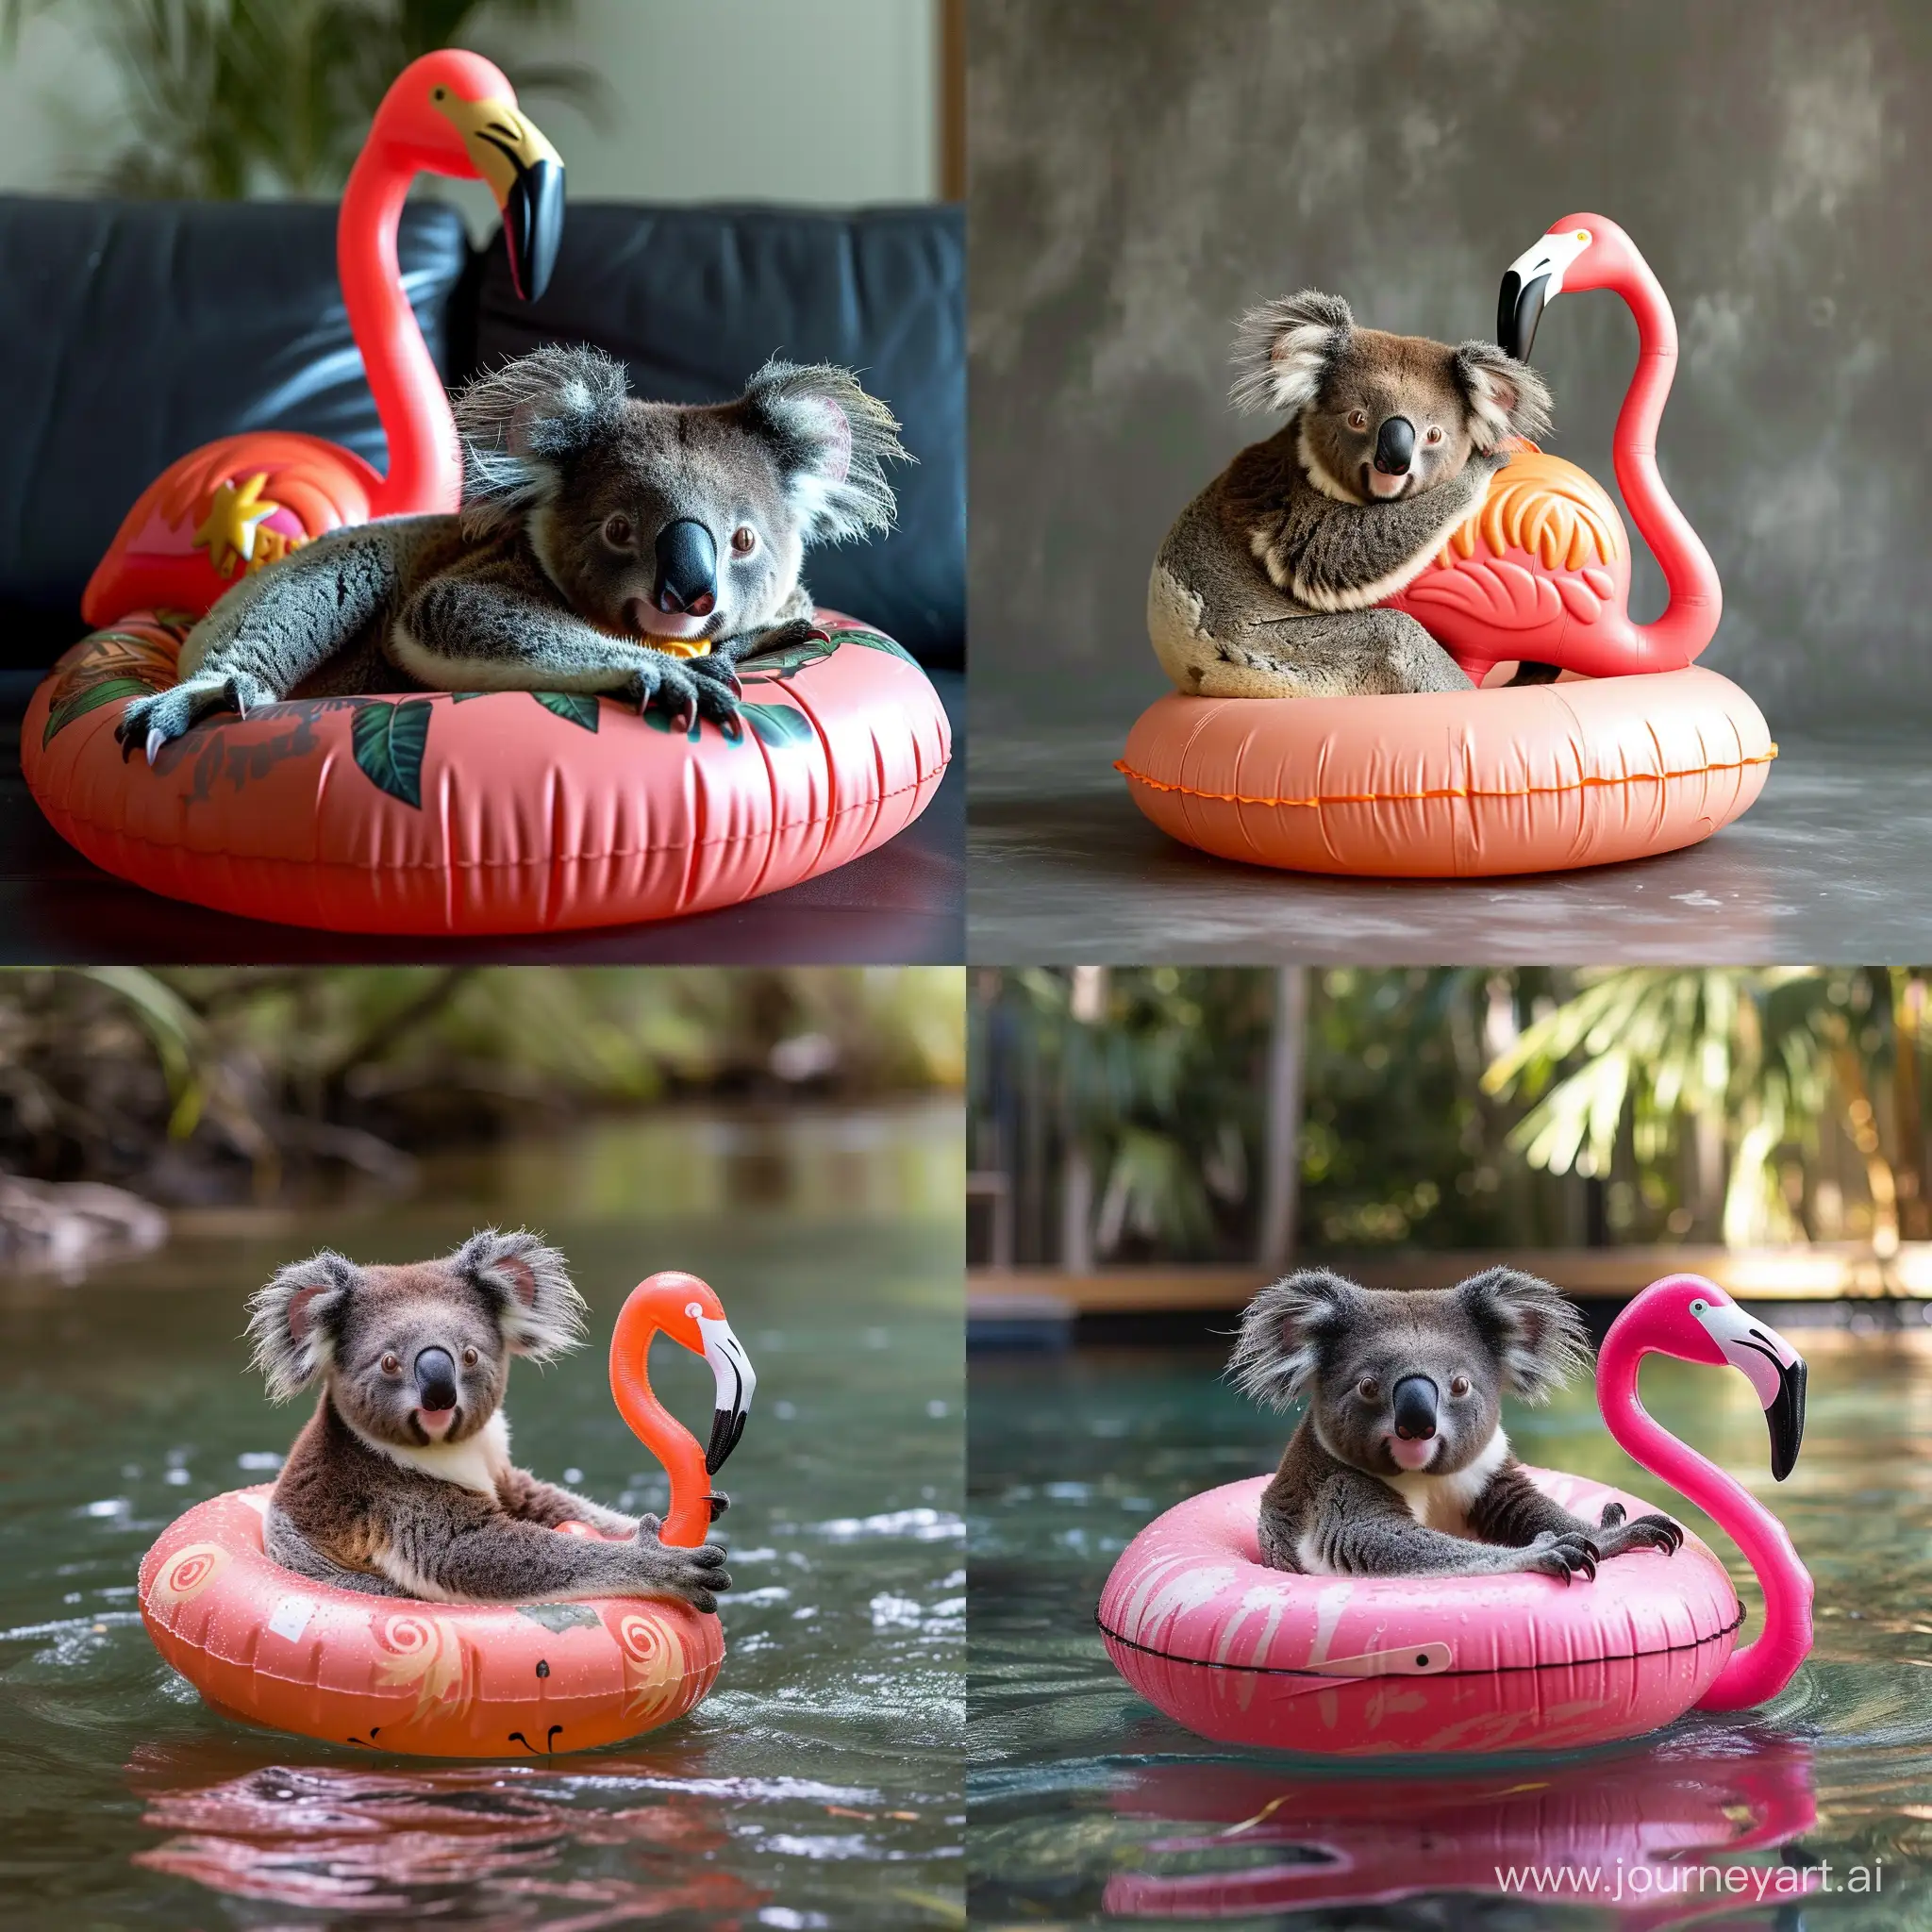 Adorable-Koala-Enjoying-a-Ride-on-a-Flamingo-Floaty